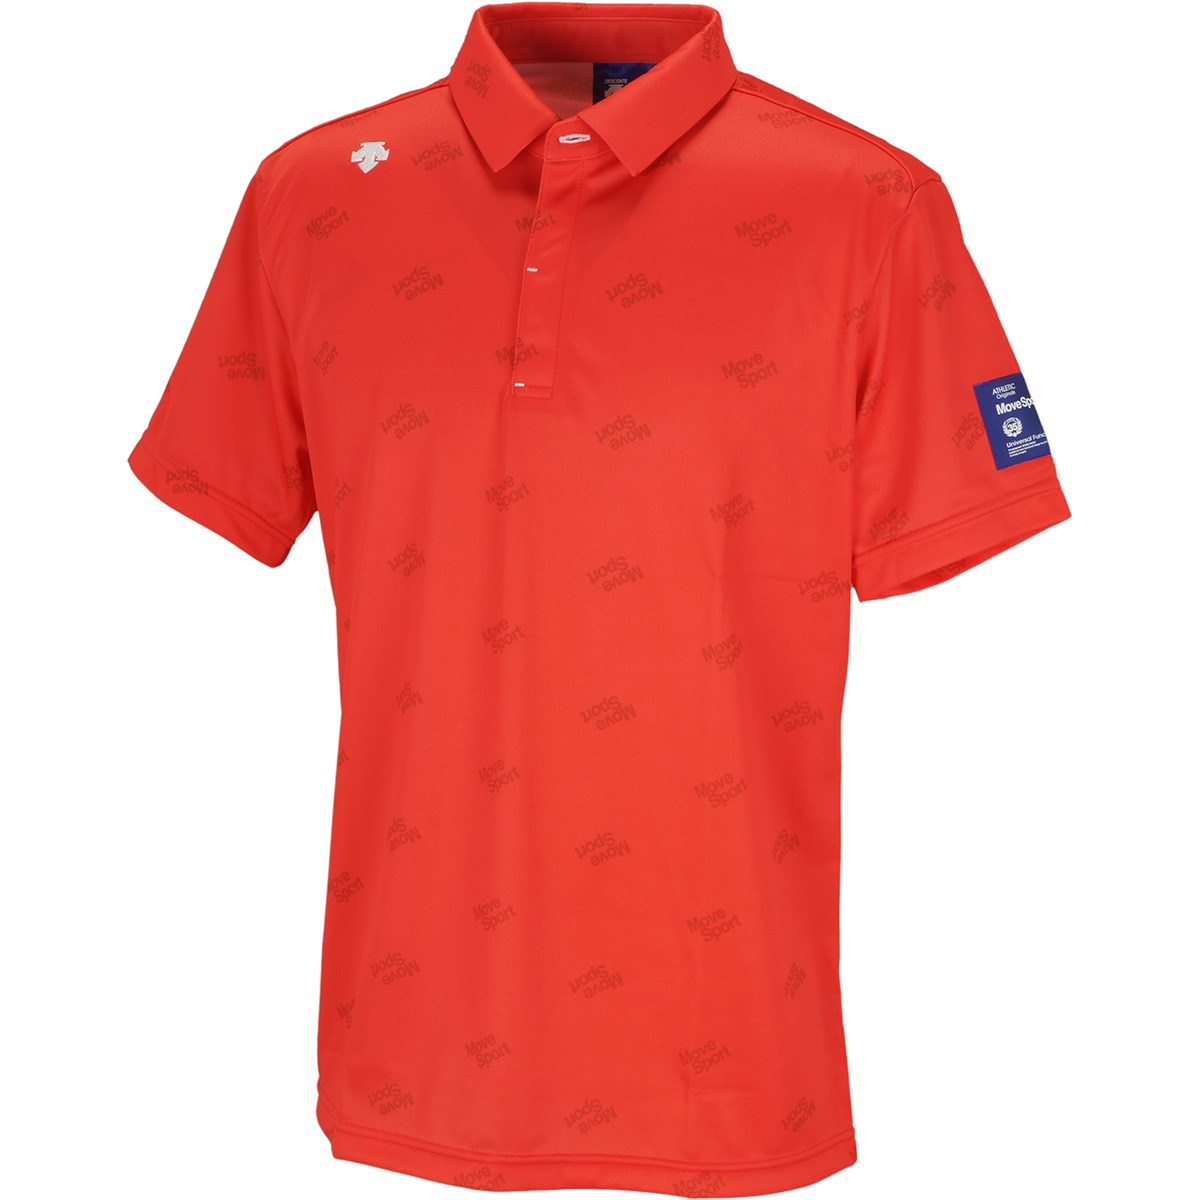 デサントゴルフ(DESCENTE GOLF) ロゴプリントリバースメッシュ 半袖ポロシャツ 